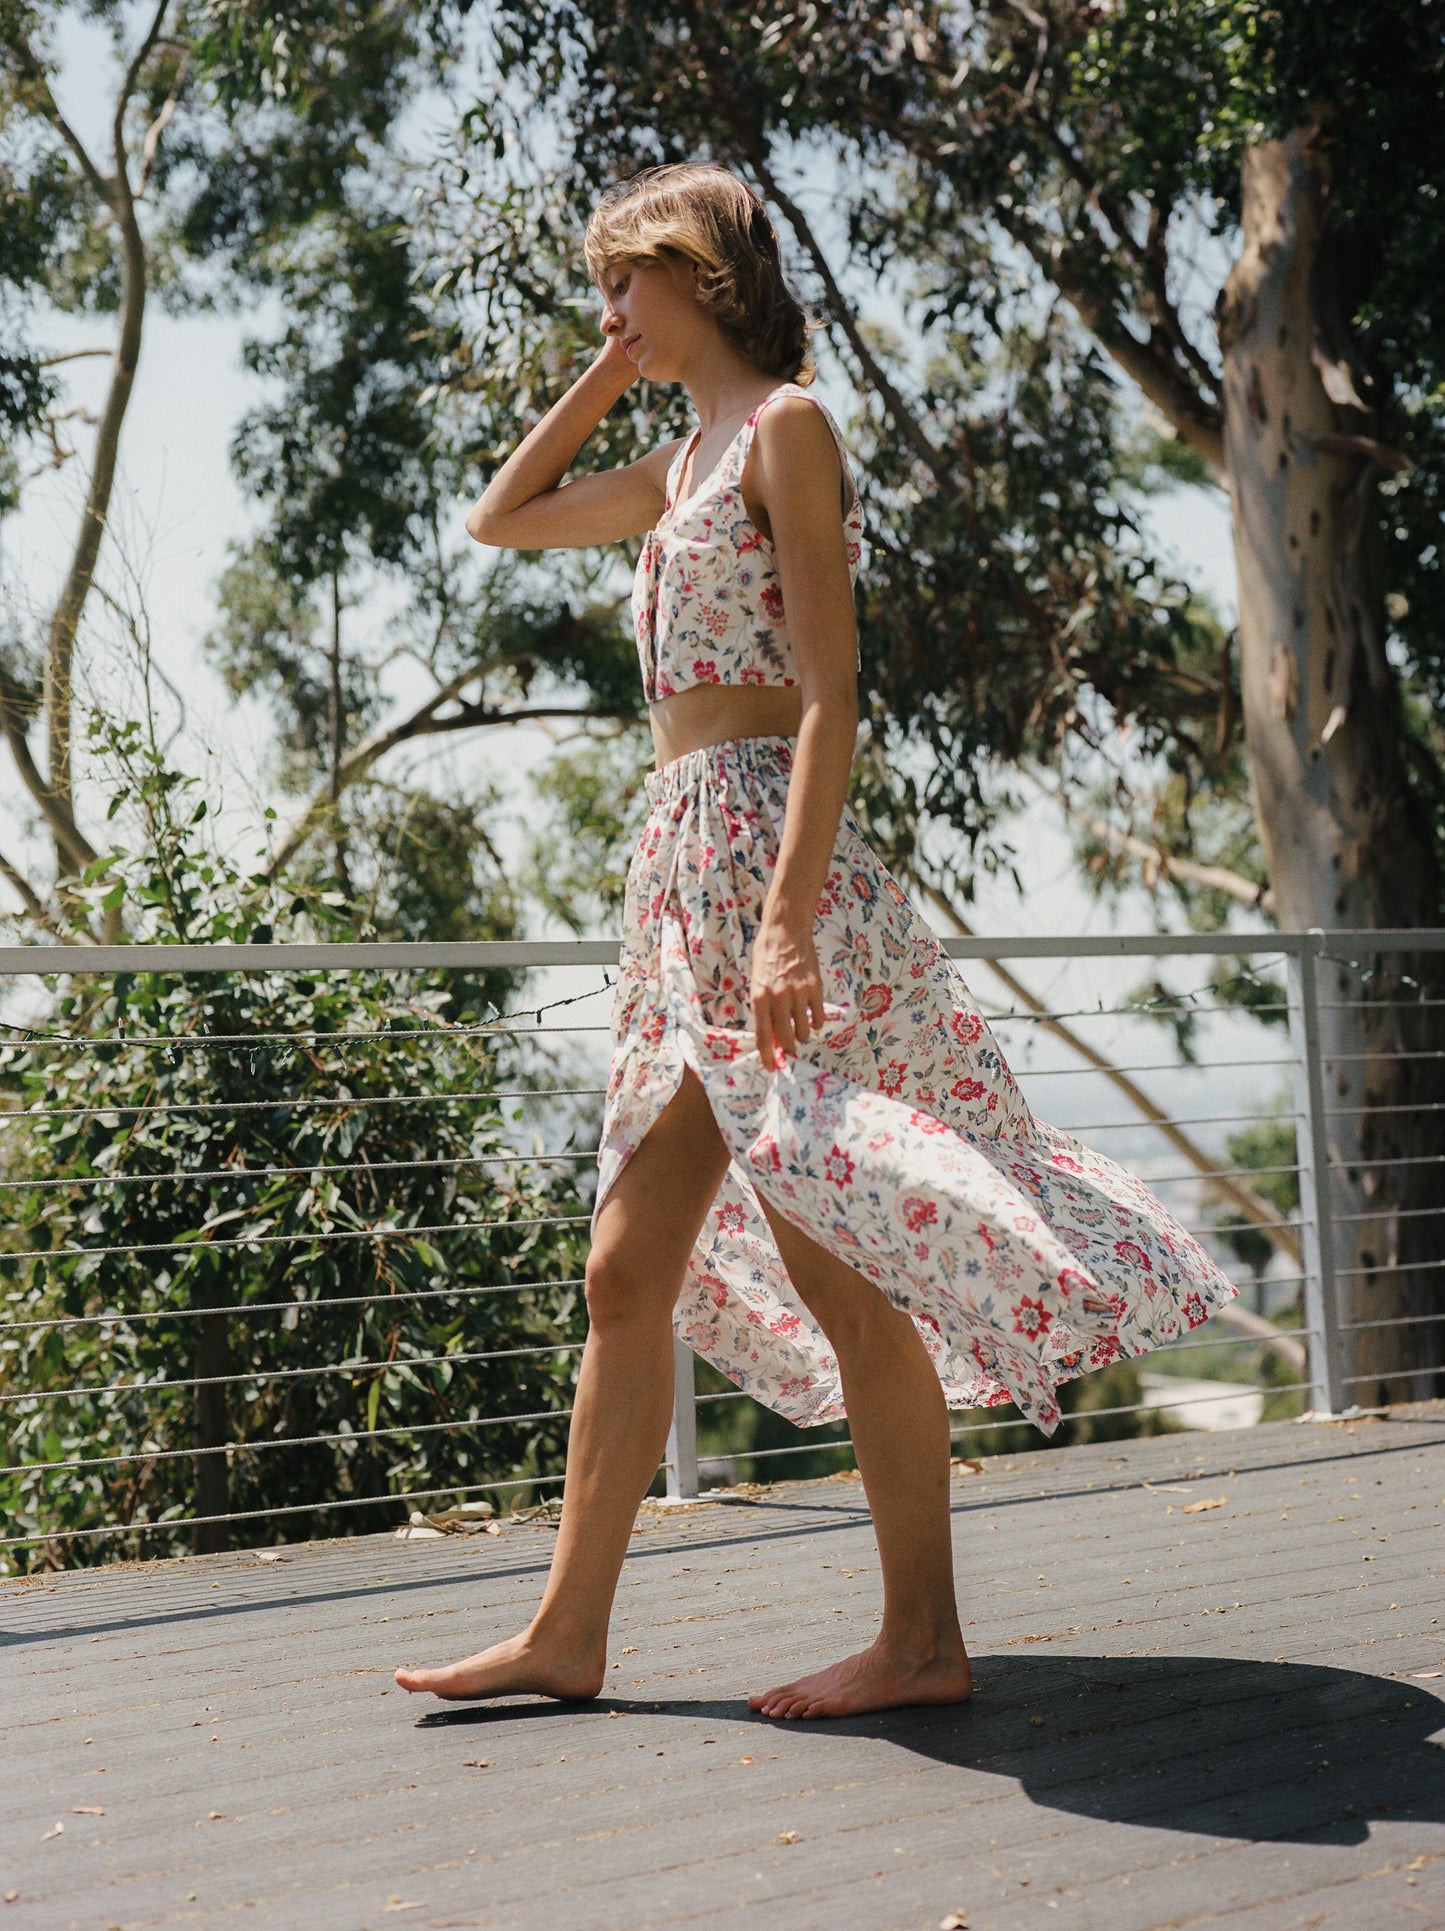 Evan Maxi Skirt - Perennial Floral